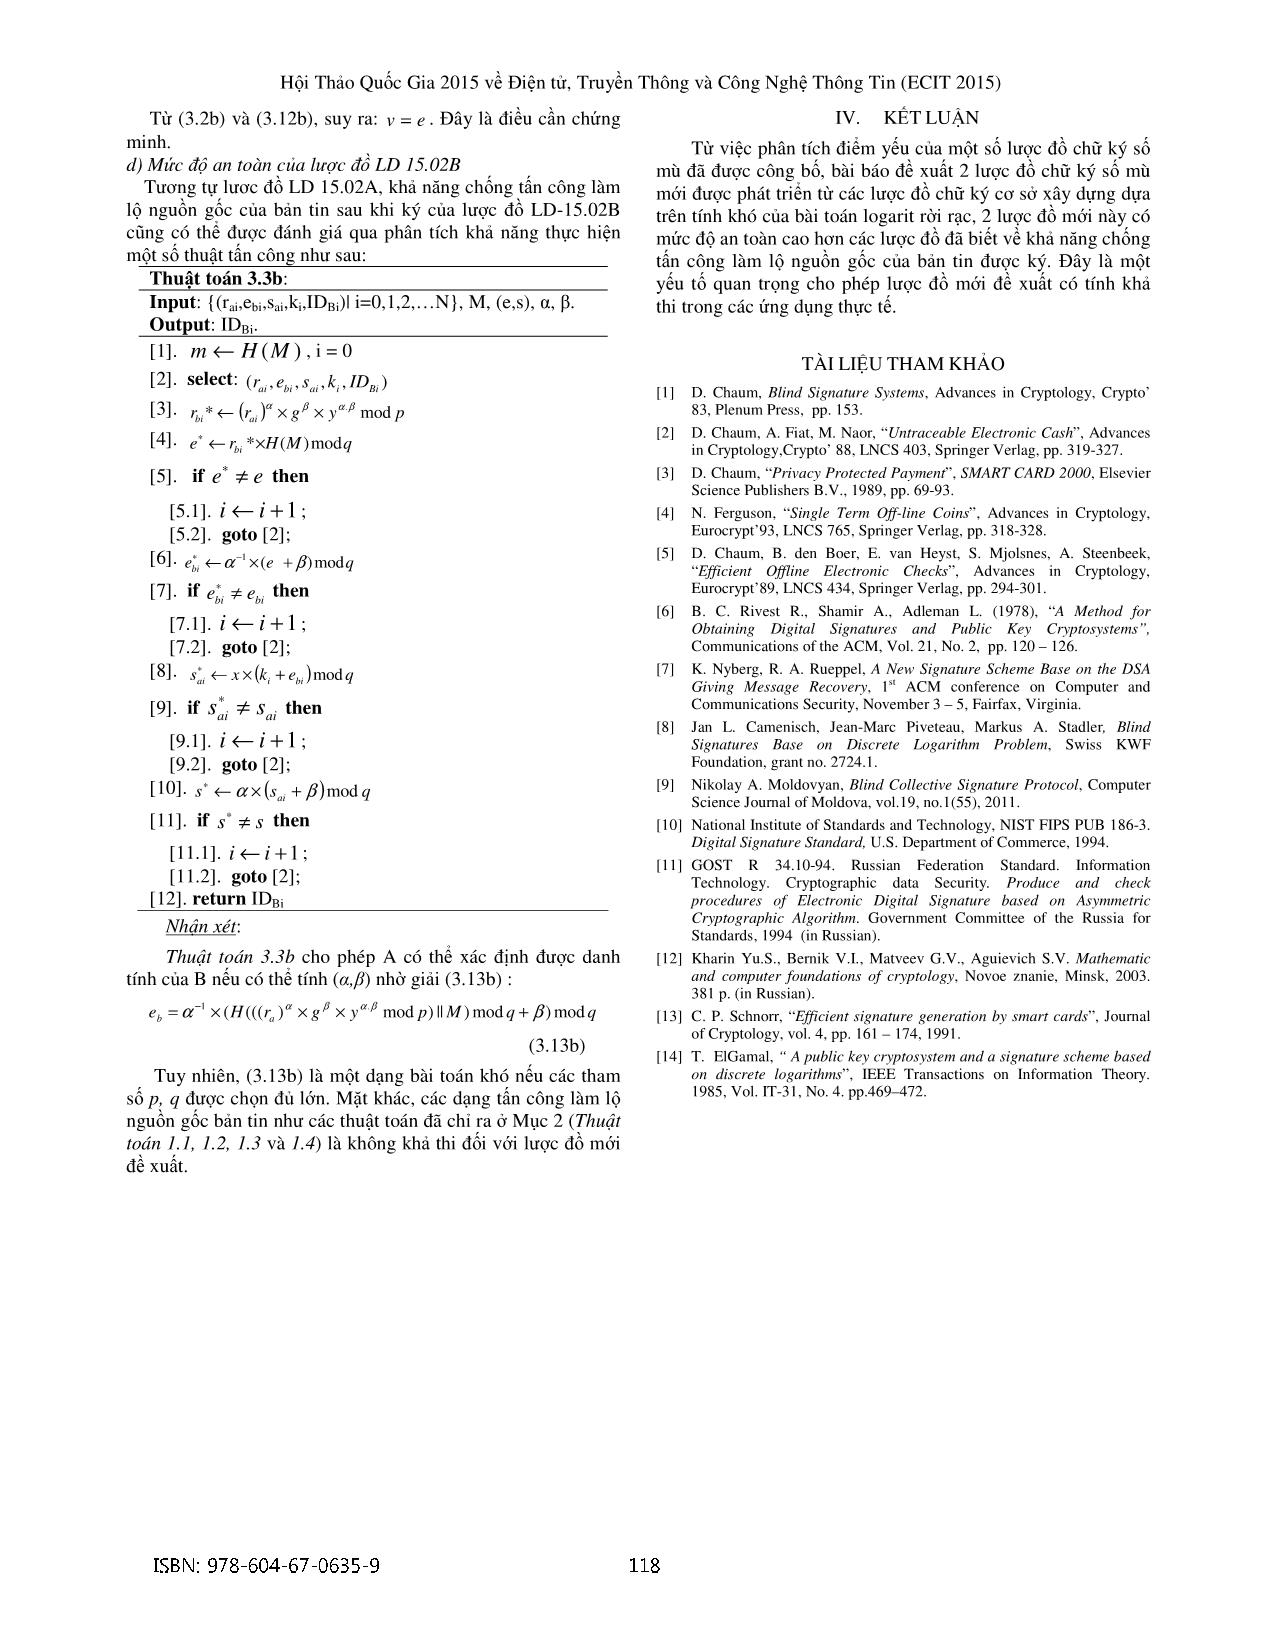 Phát triển lược đồ chữ ký số mù trang 7